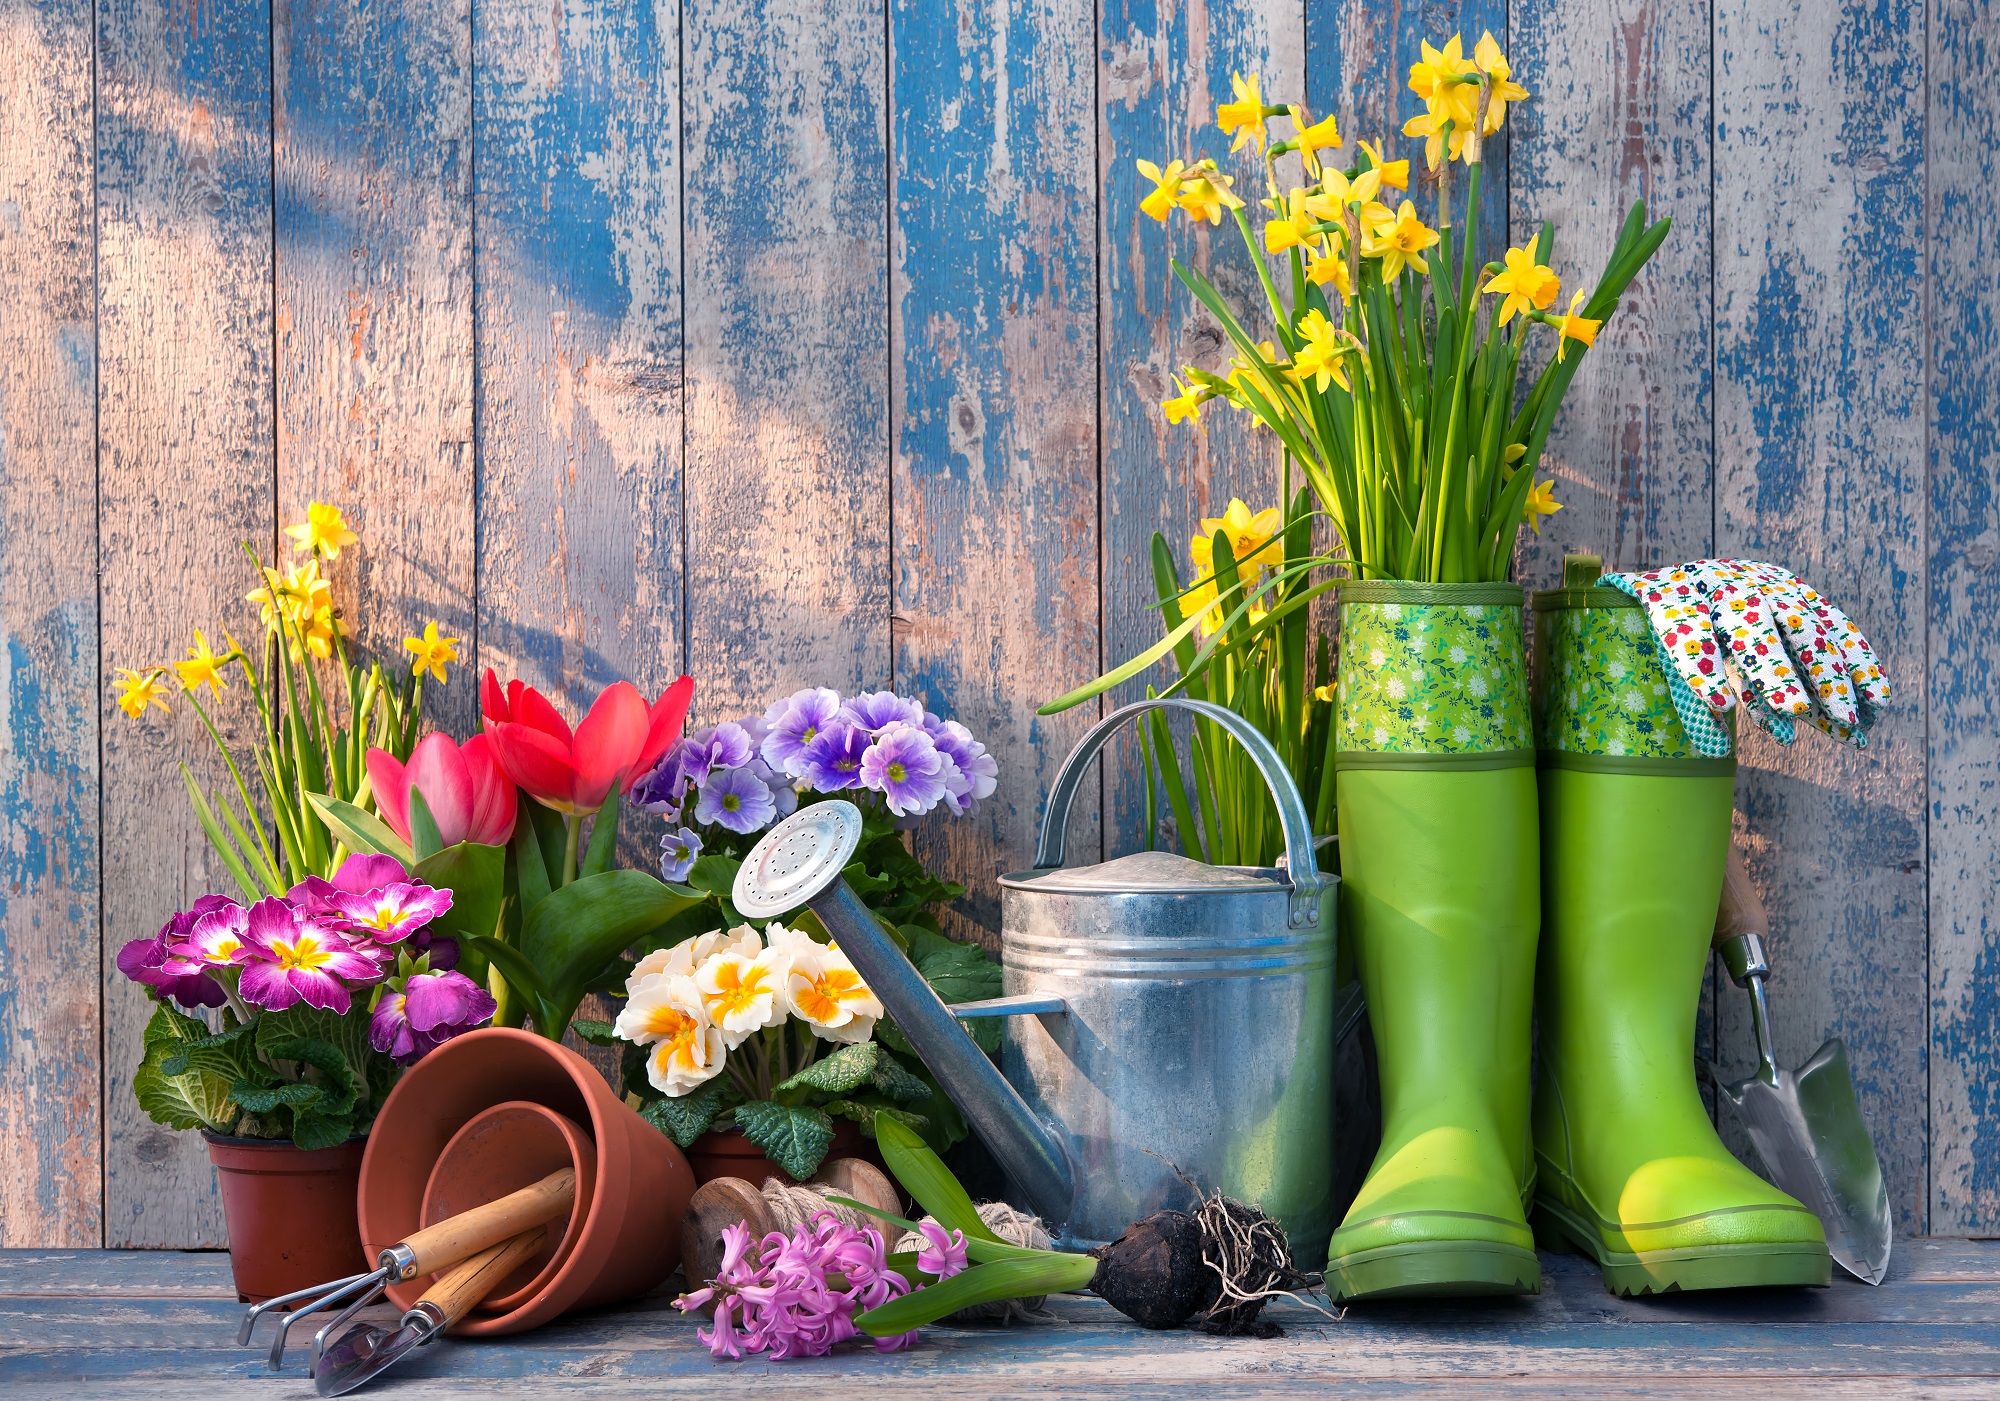 Календарь садовода и огородника на год. Источник фото: Shutterstock